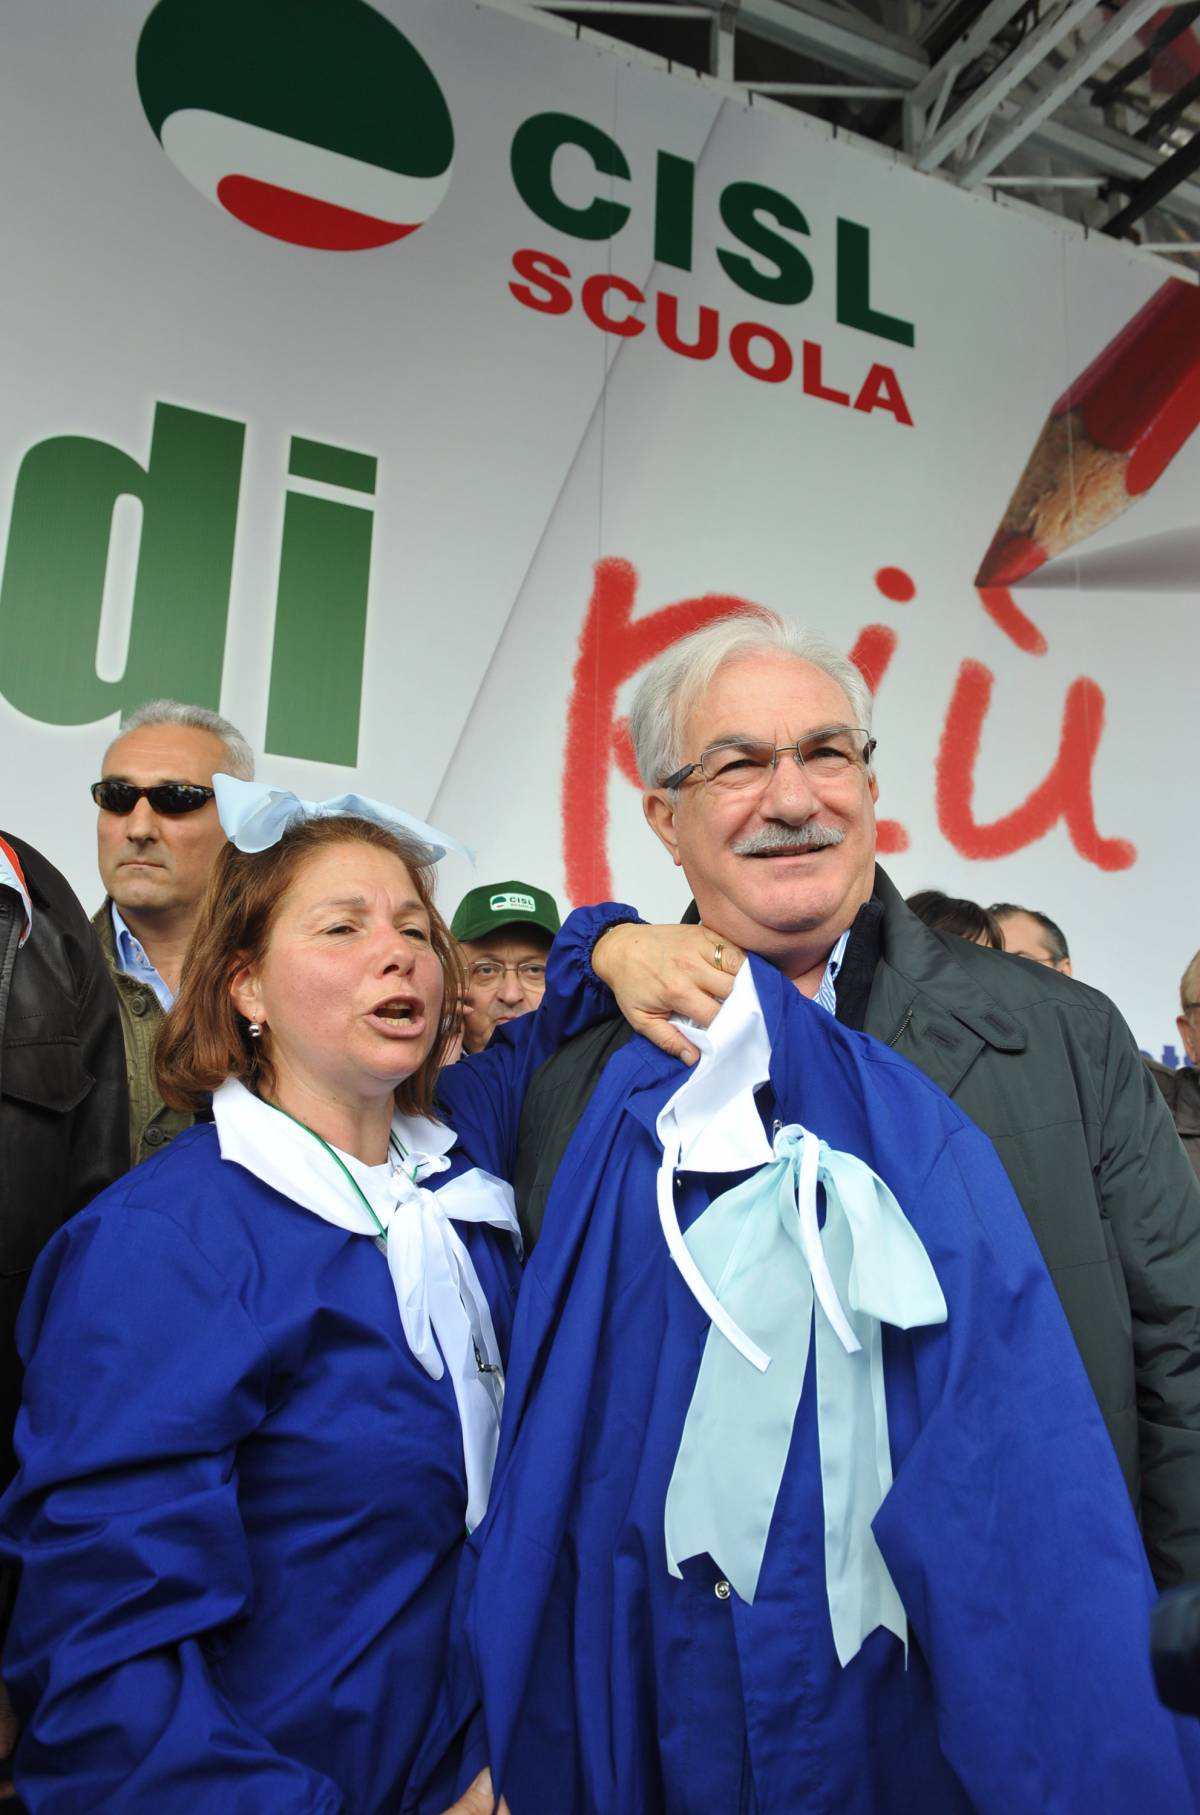 Bonanni e Cisl in piazza: 
"La scuola è in ginocchio" 
Gelmini: "Slogan vecchi"